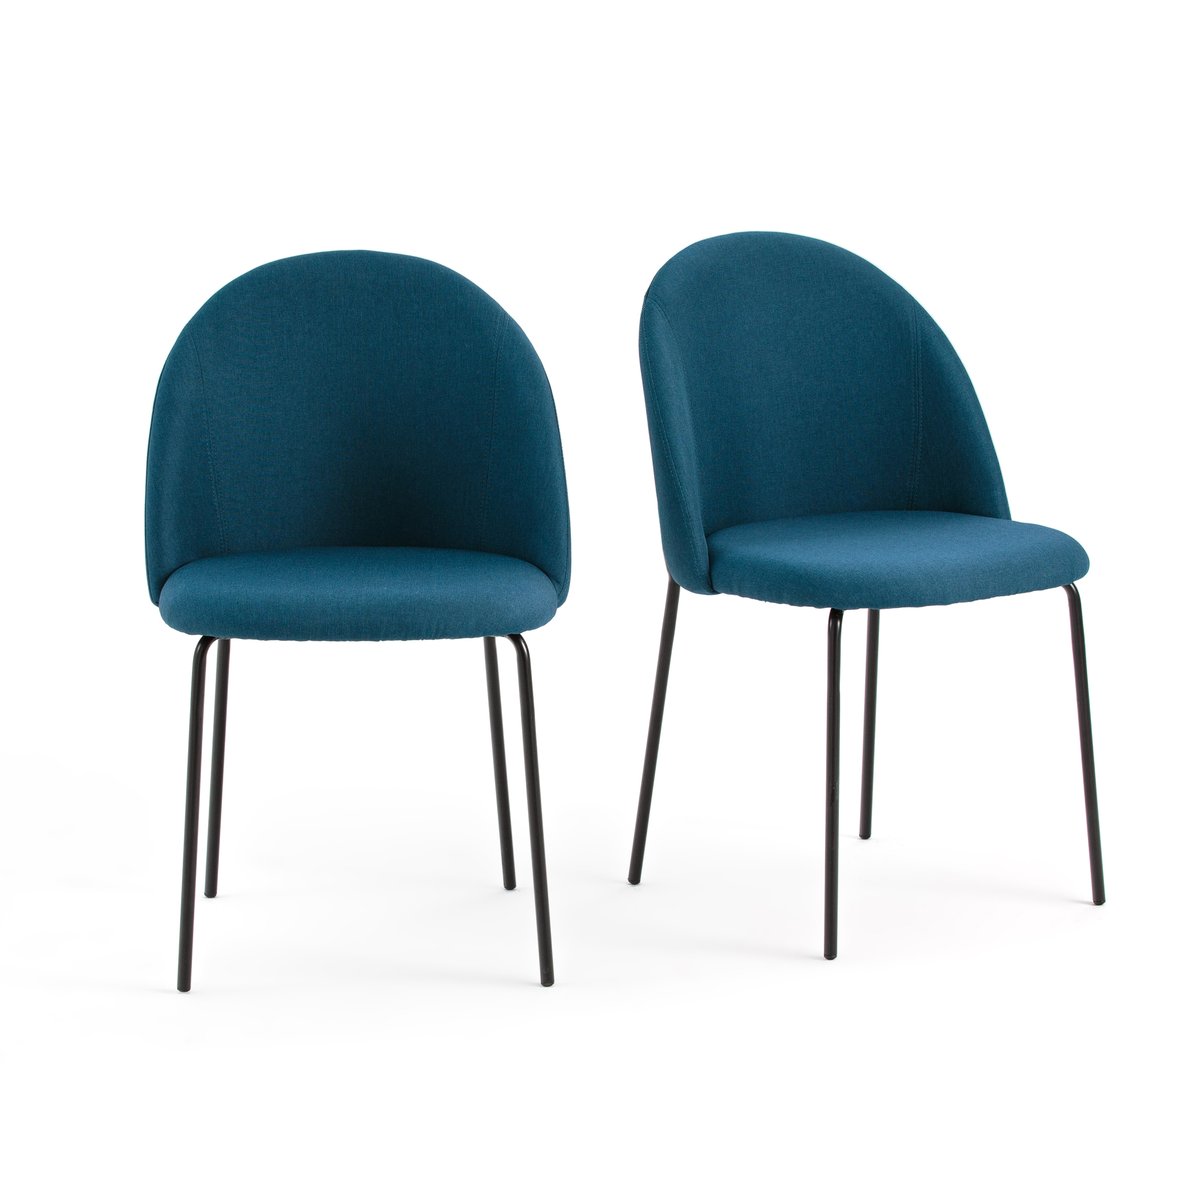 Комплект из 2 стульев NORDIE La Redoute единый размер синий комплект из 2 стульев jimi la redoute единый размер зеленый